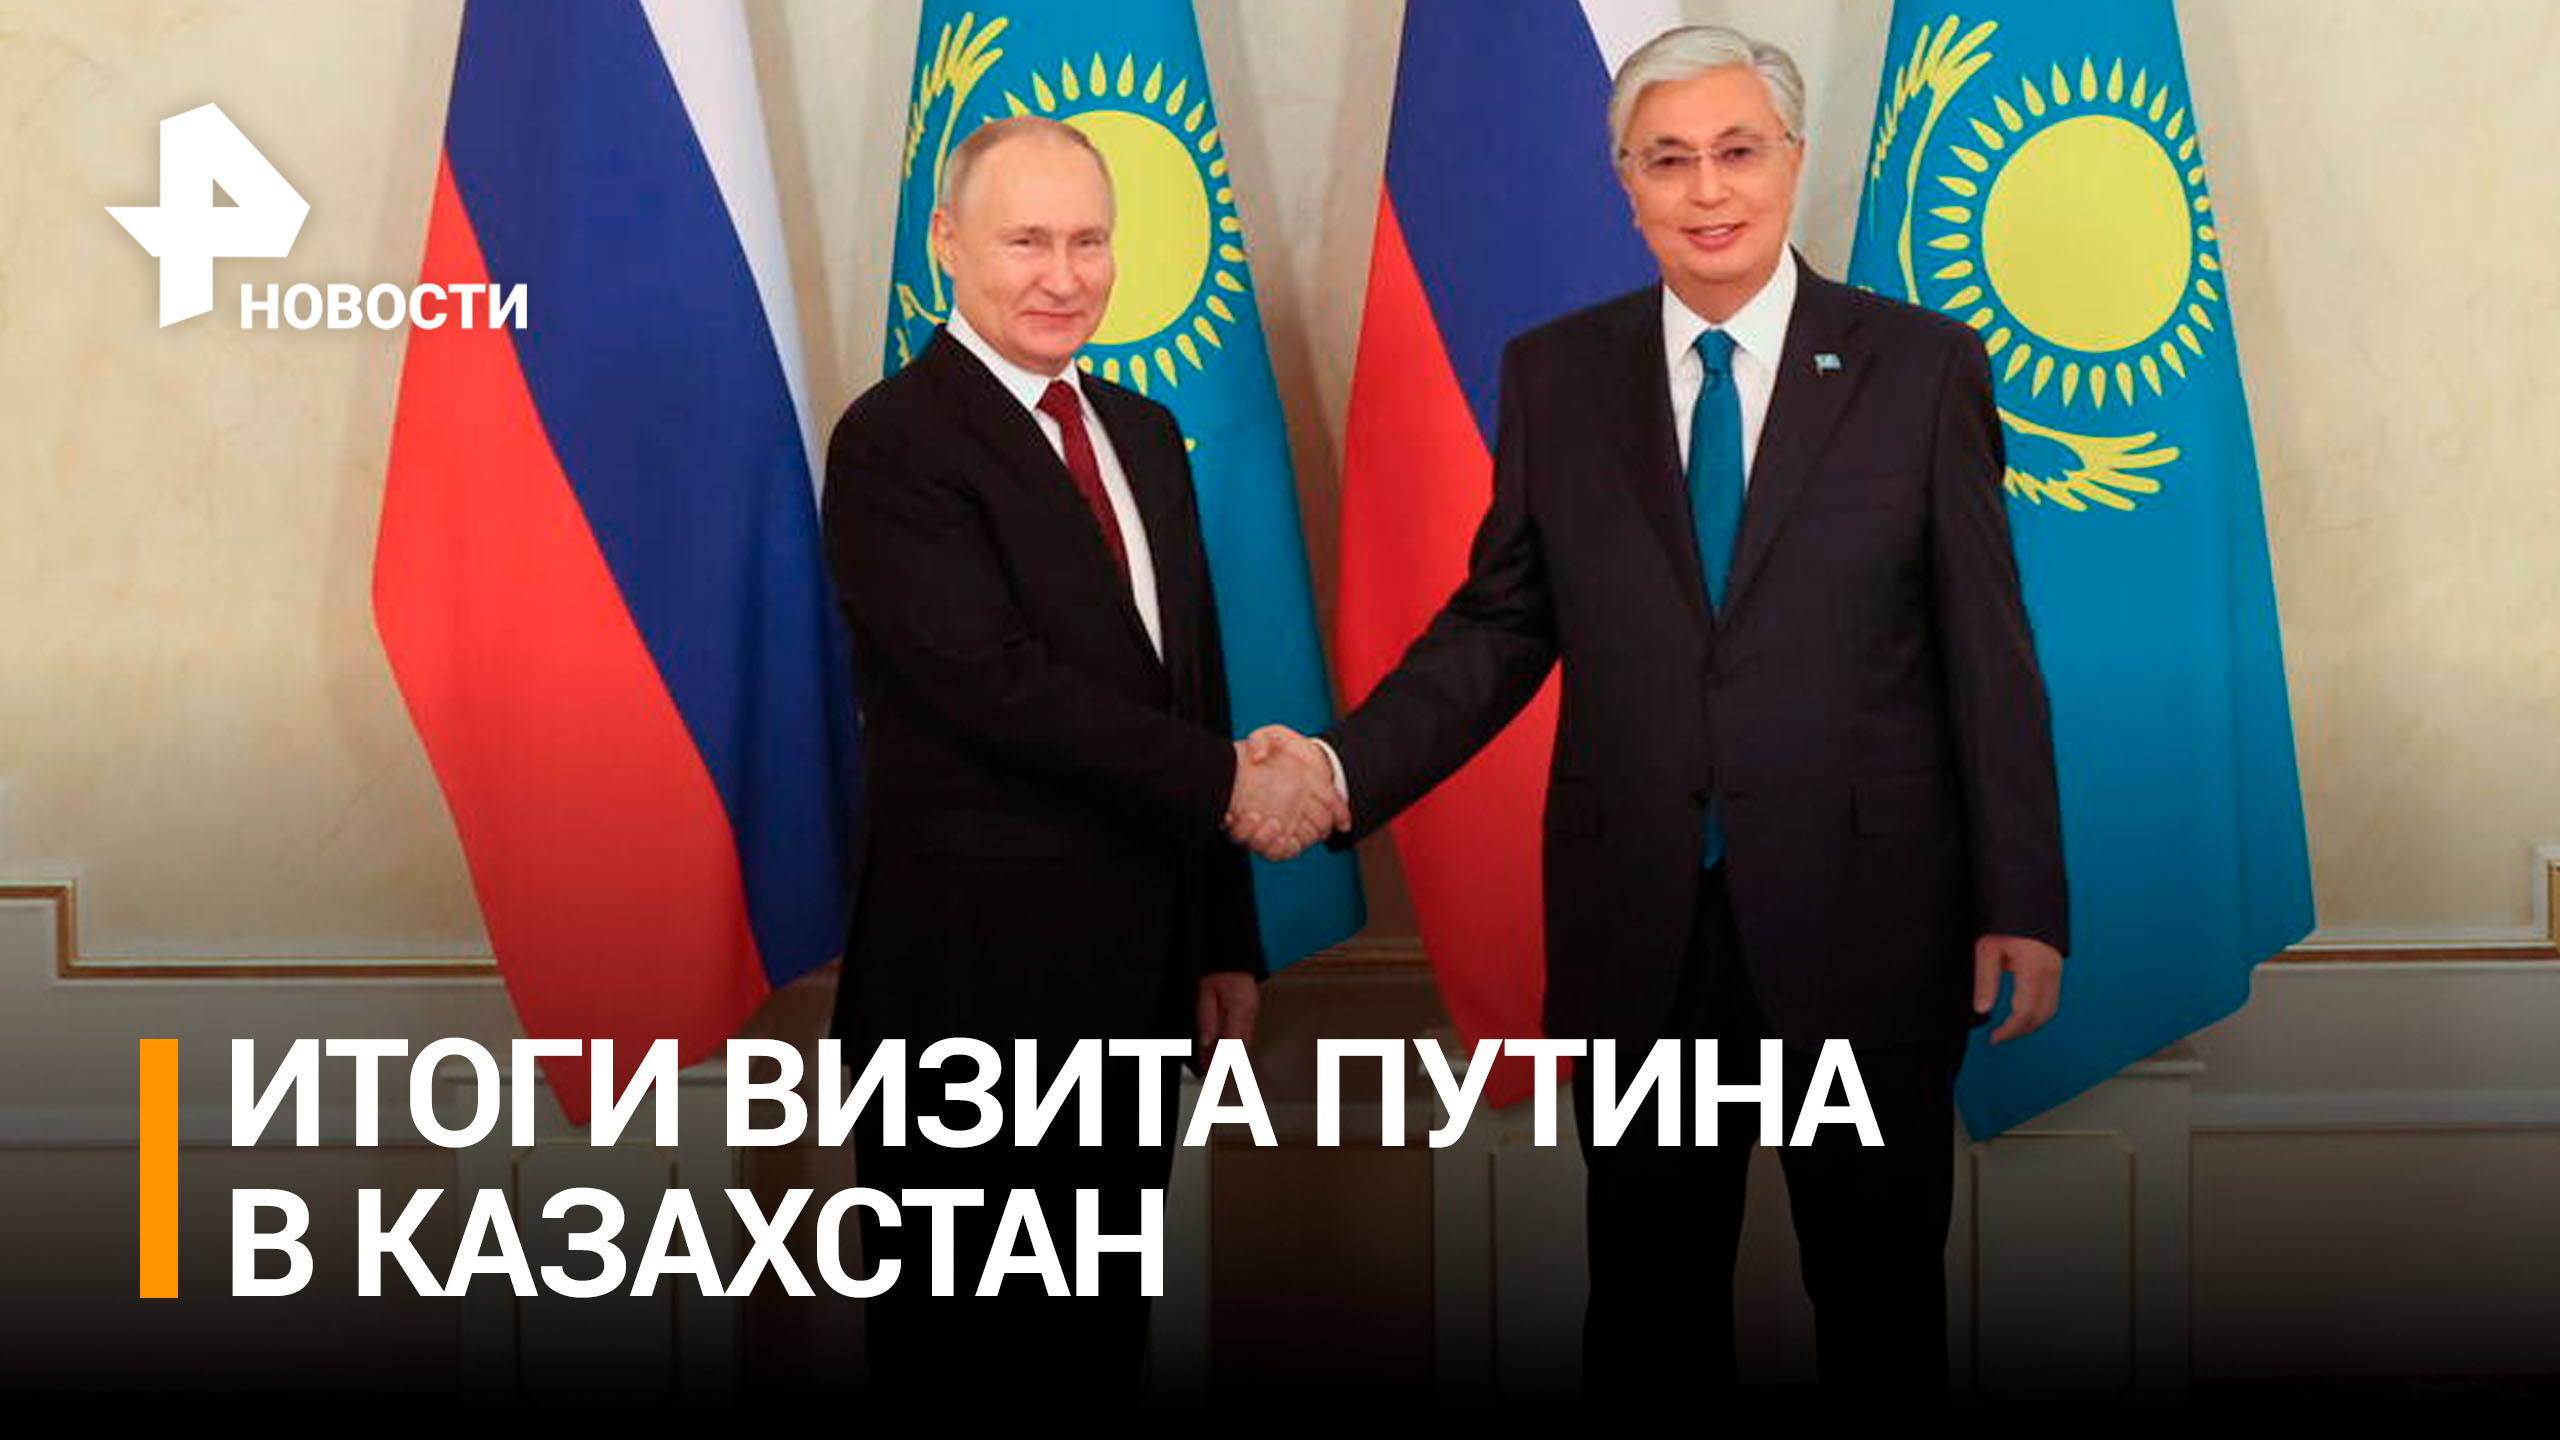 Соседские отношения и товарооборот: первые итоги визита Путина в Казахстан / РЕН Новости